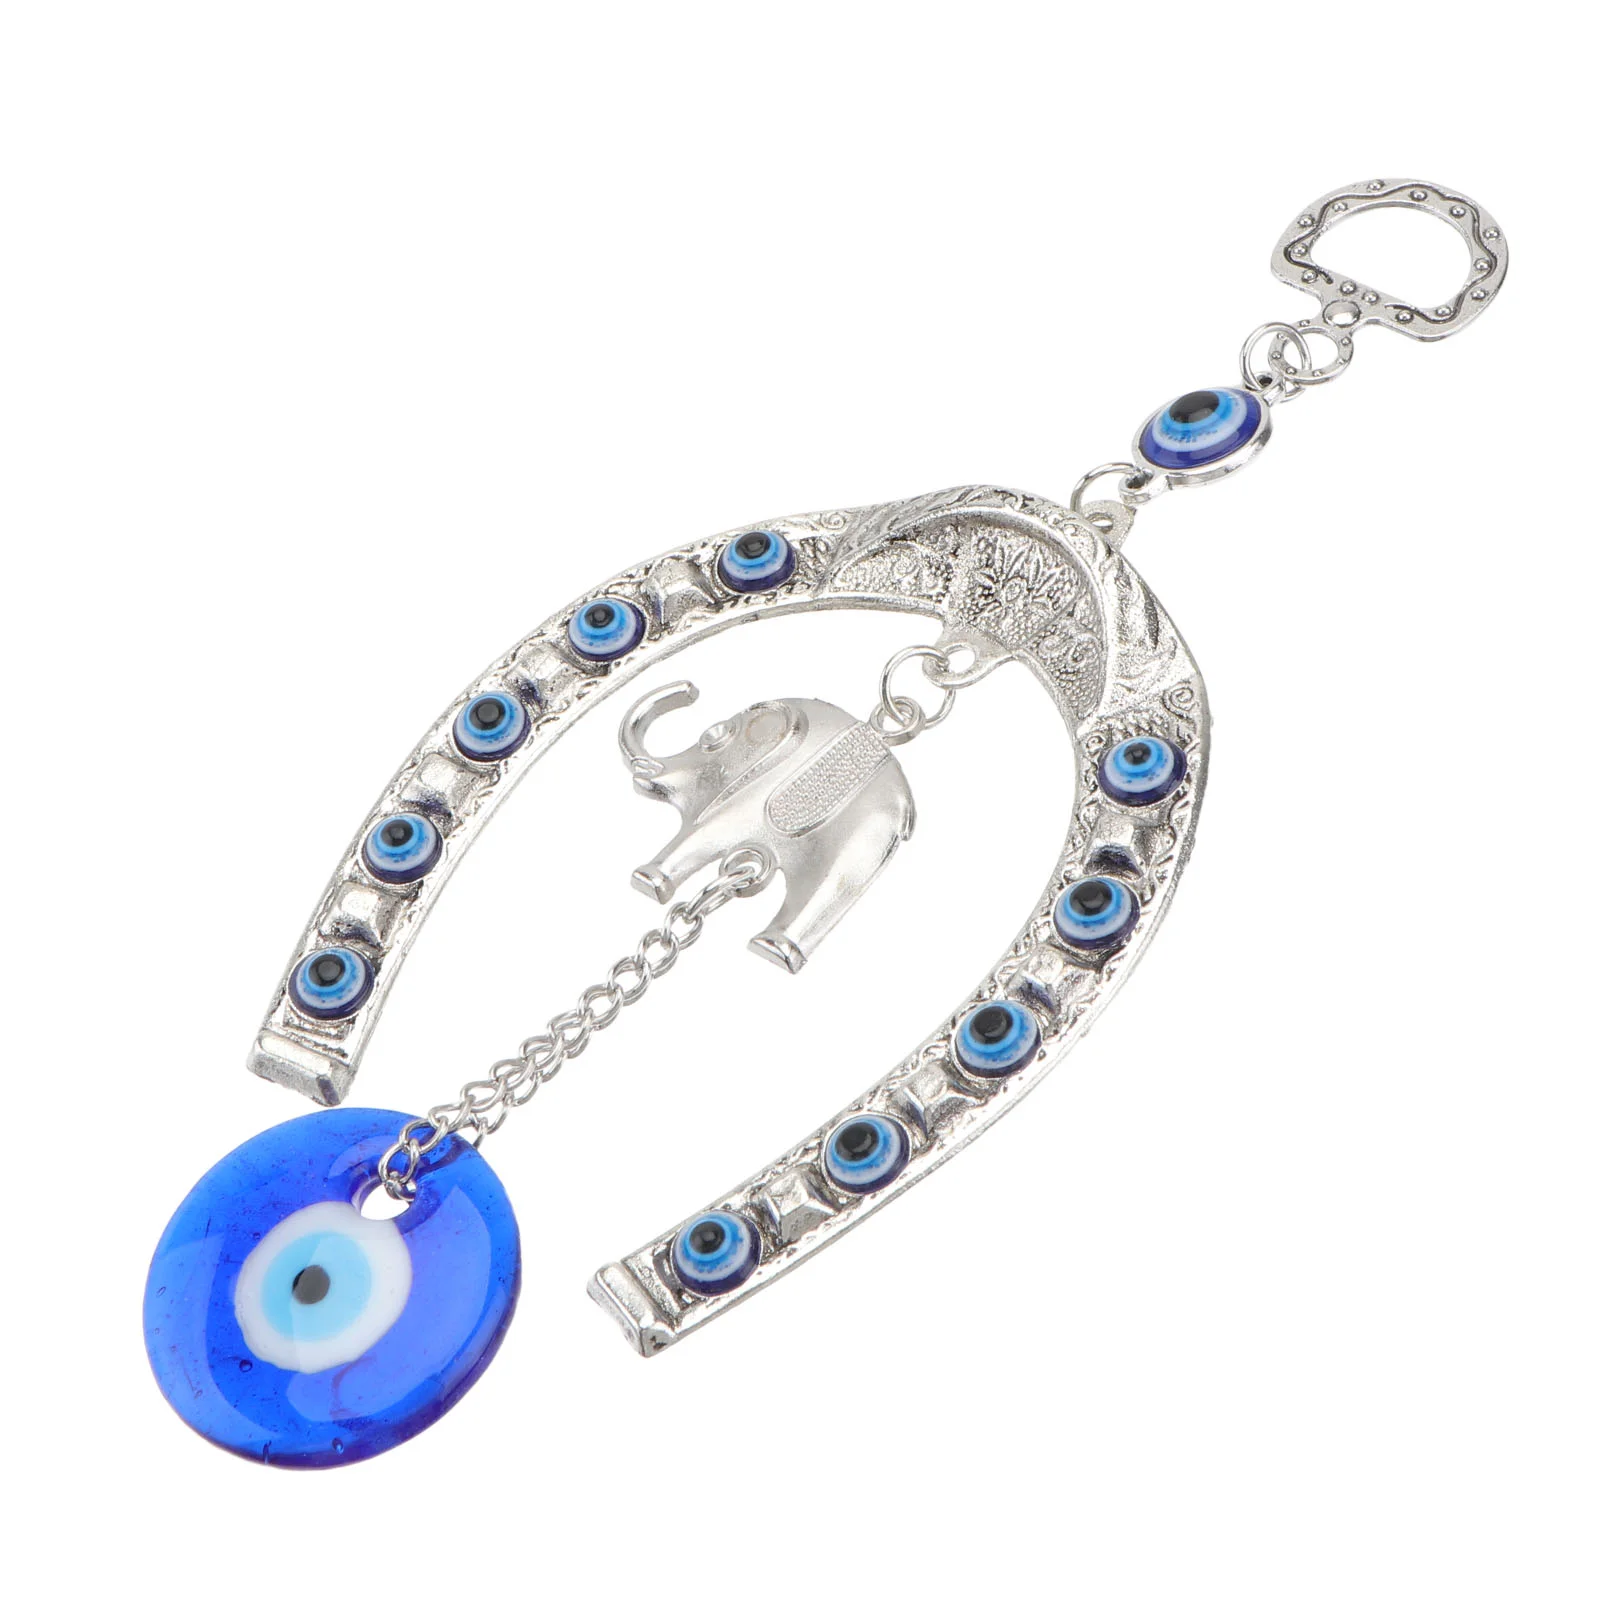 

Eye Evil Hanging Blue Ornament Elephant Decor Pendant Wall Turkish Car Charm Lucky Horseshoe Amulet Eyes Blessing Protection